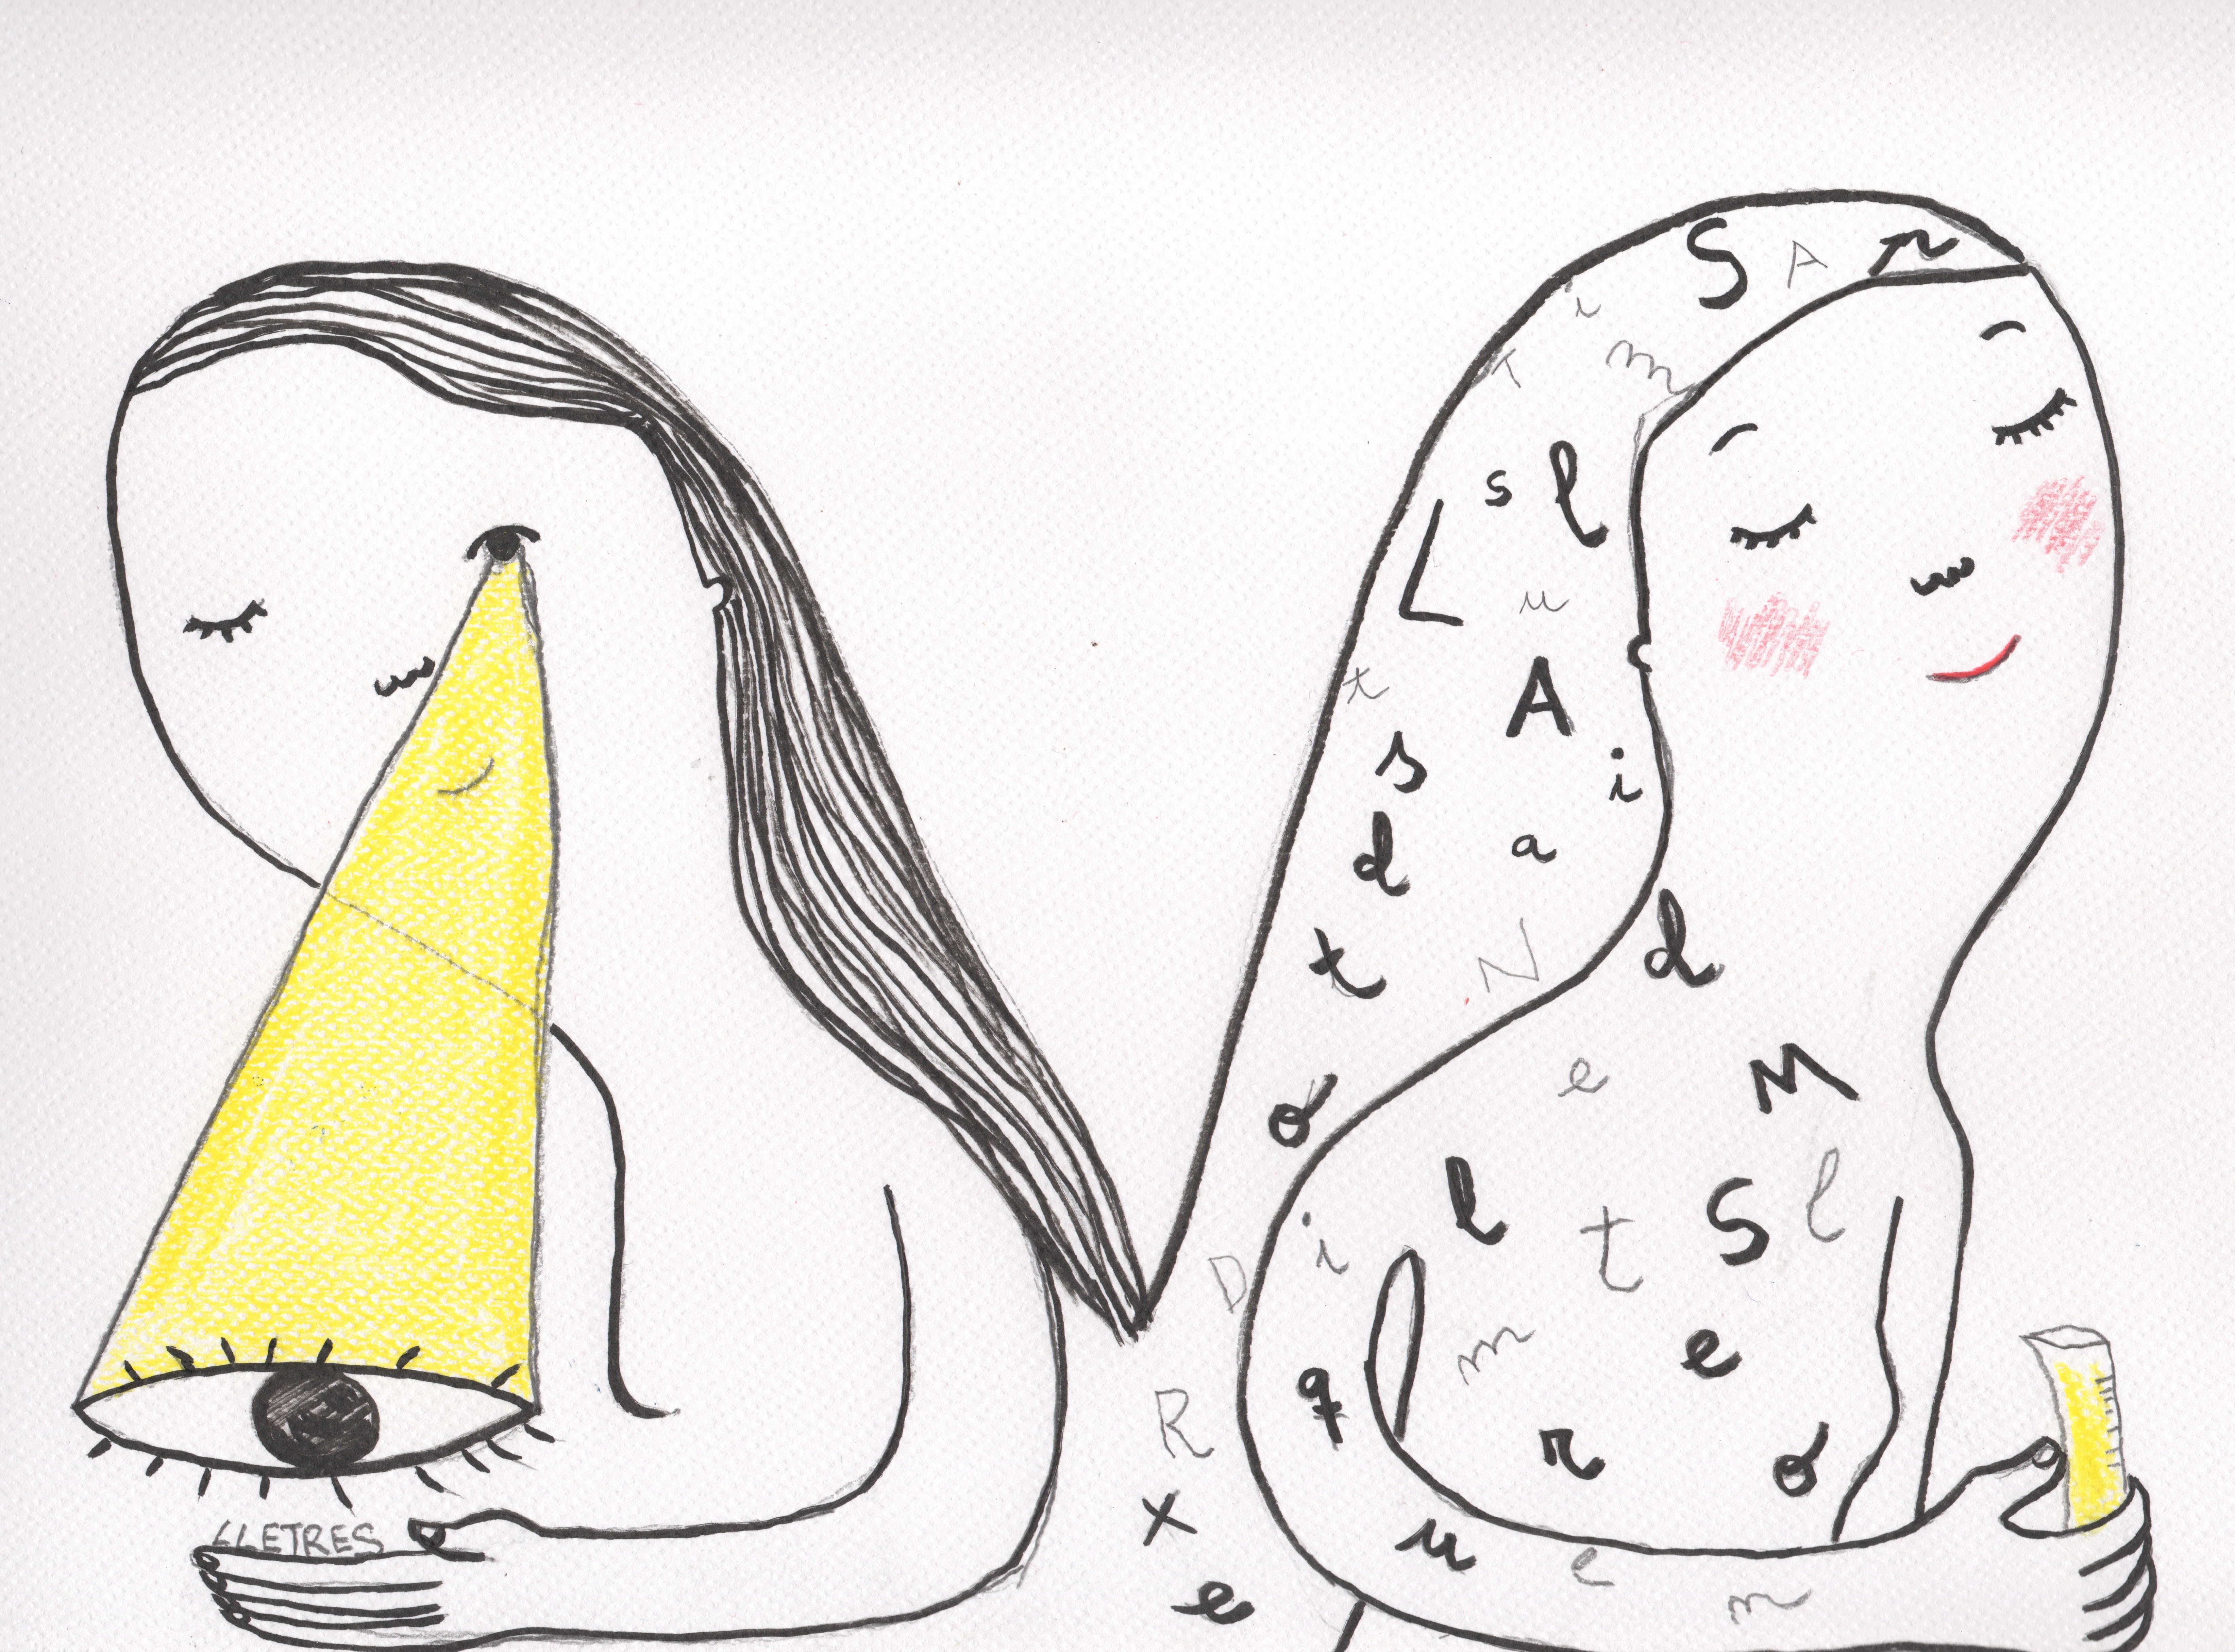 Ciències pures, o lletres? Il·lustració d'Eva Armisén de "Vaig fer ciències pures", un text d'Eva Piquer basat en un fragment del llibre "La noia perfecta", de Nathalie Azulai.